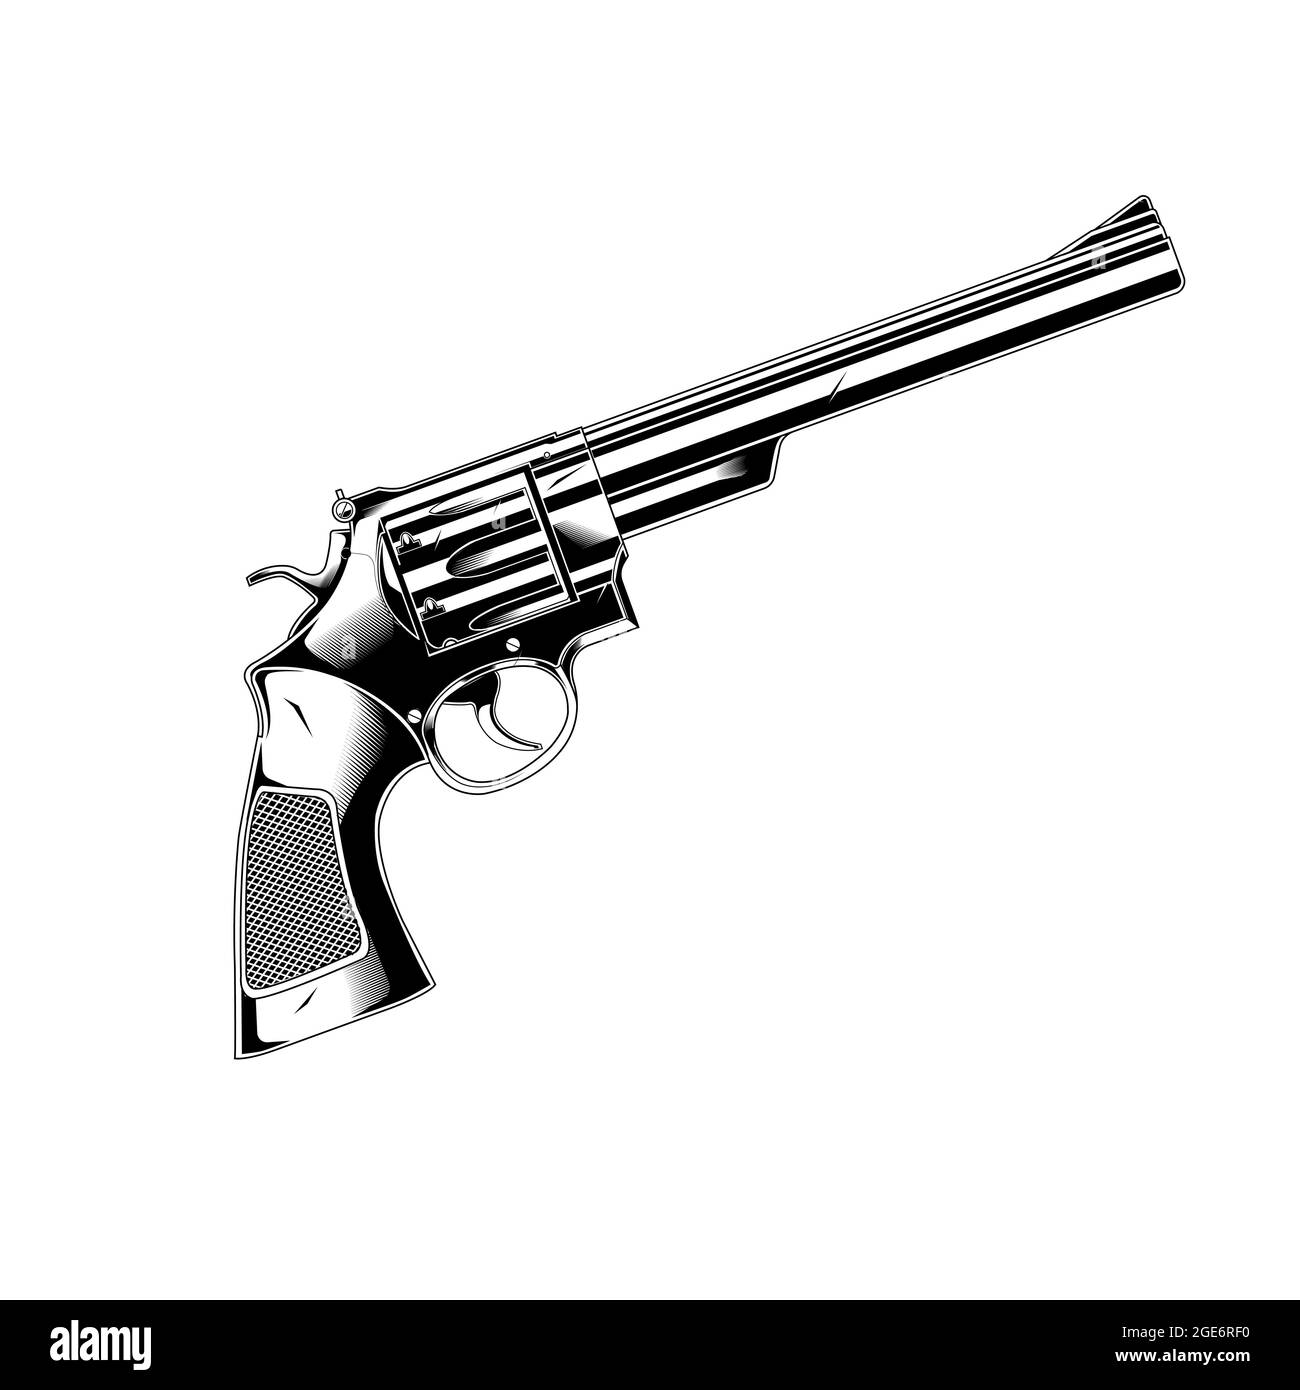 Pistolet art ligne 357 Magnum Revolver Illustration de Vecteur